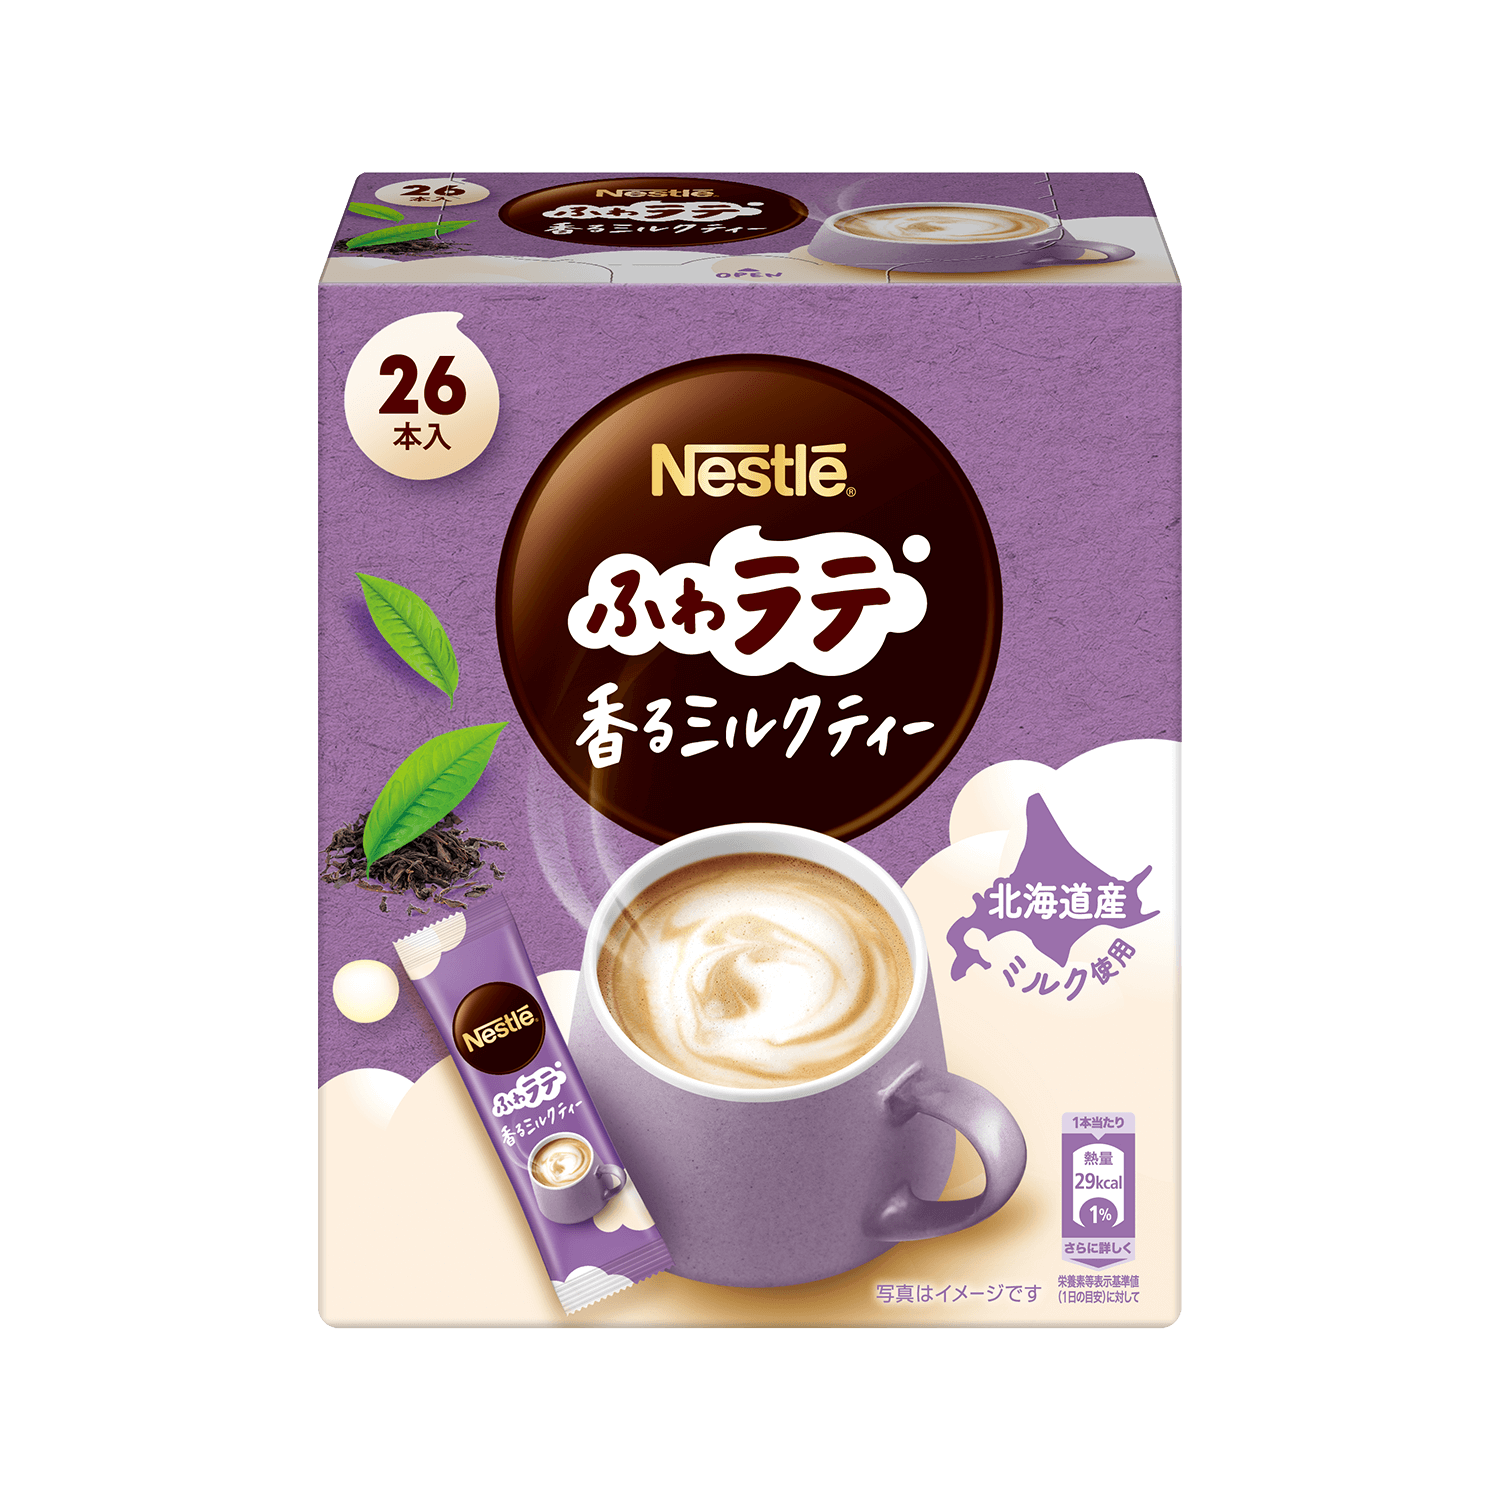 ネスレ ふわラテ 香るミルクティー 26P | ネスレ日本 製品情報サイト